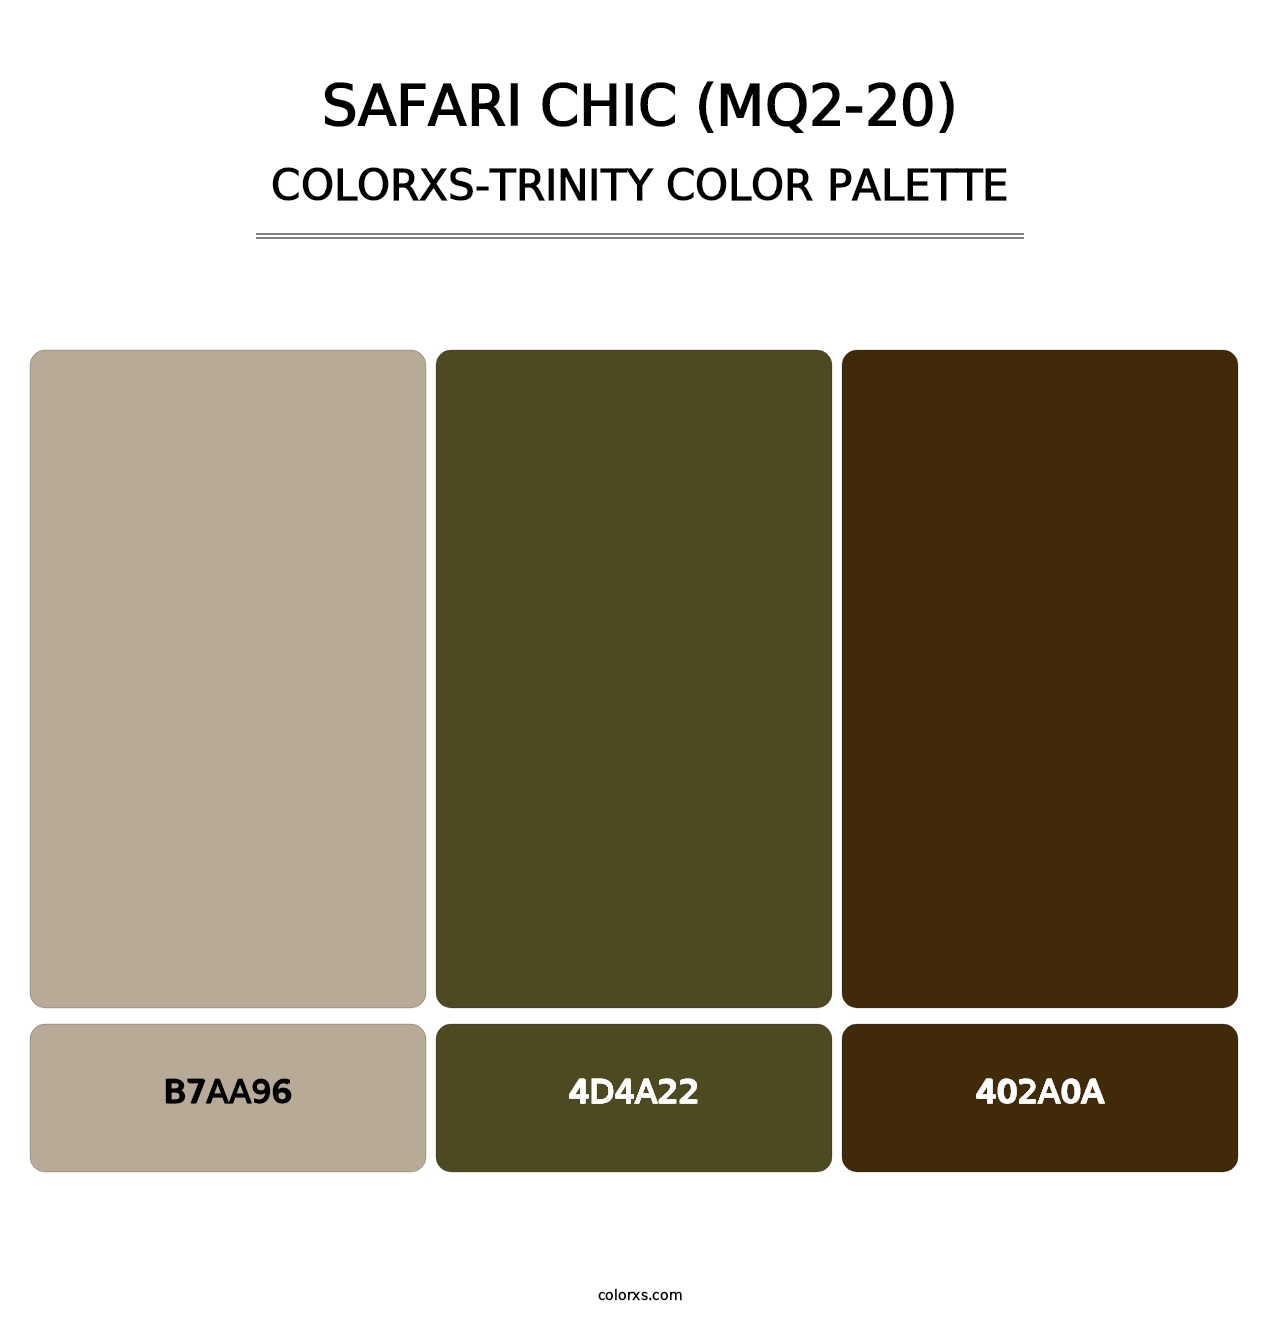 Safari Chic (MQ2-20) - Colorxs Trinity Palette